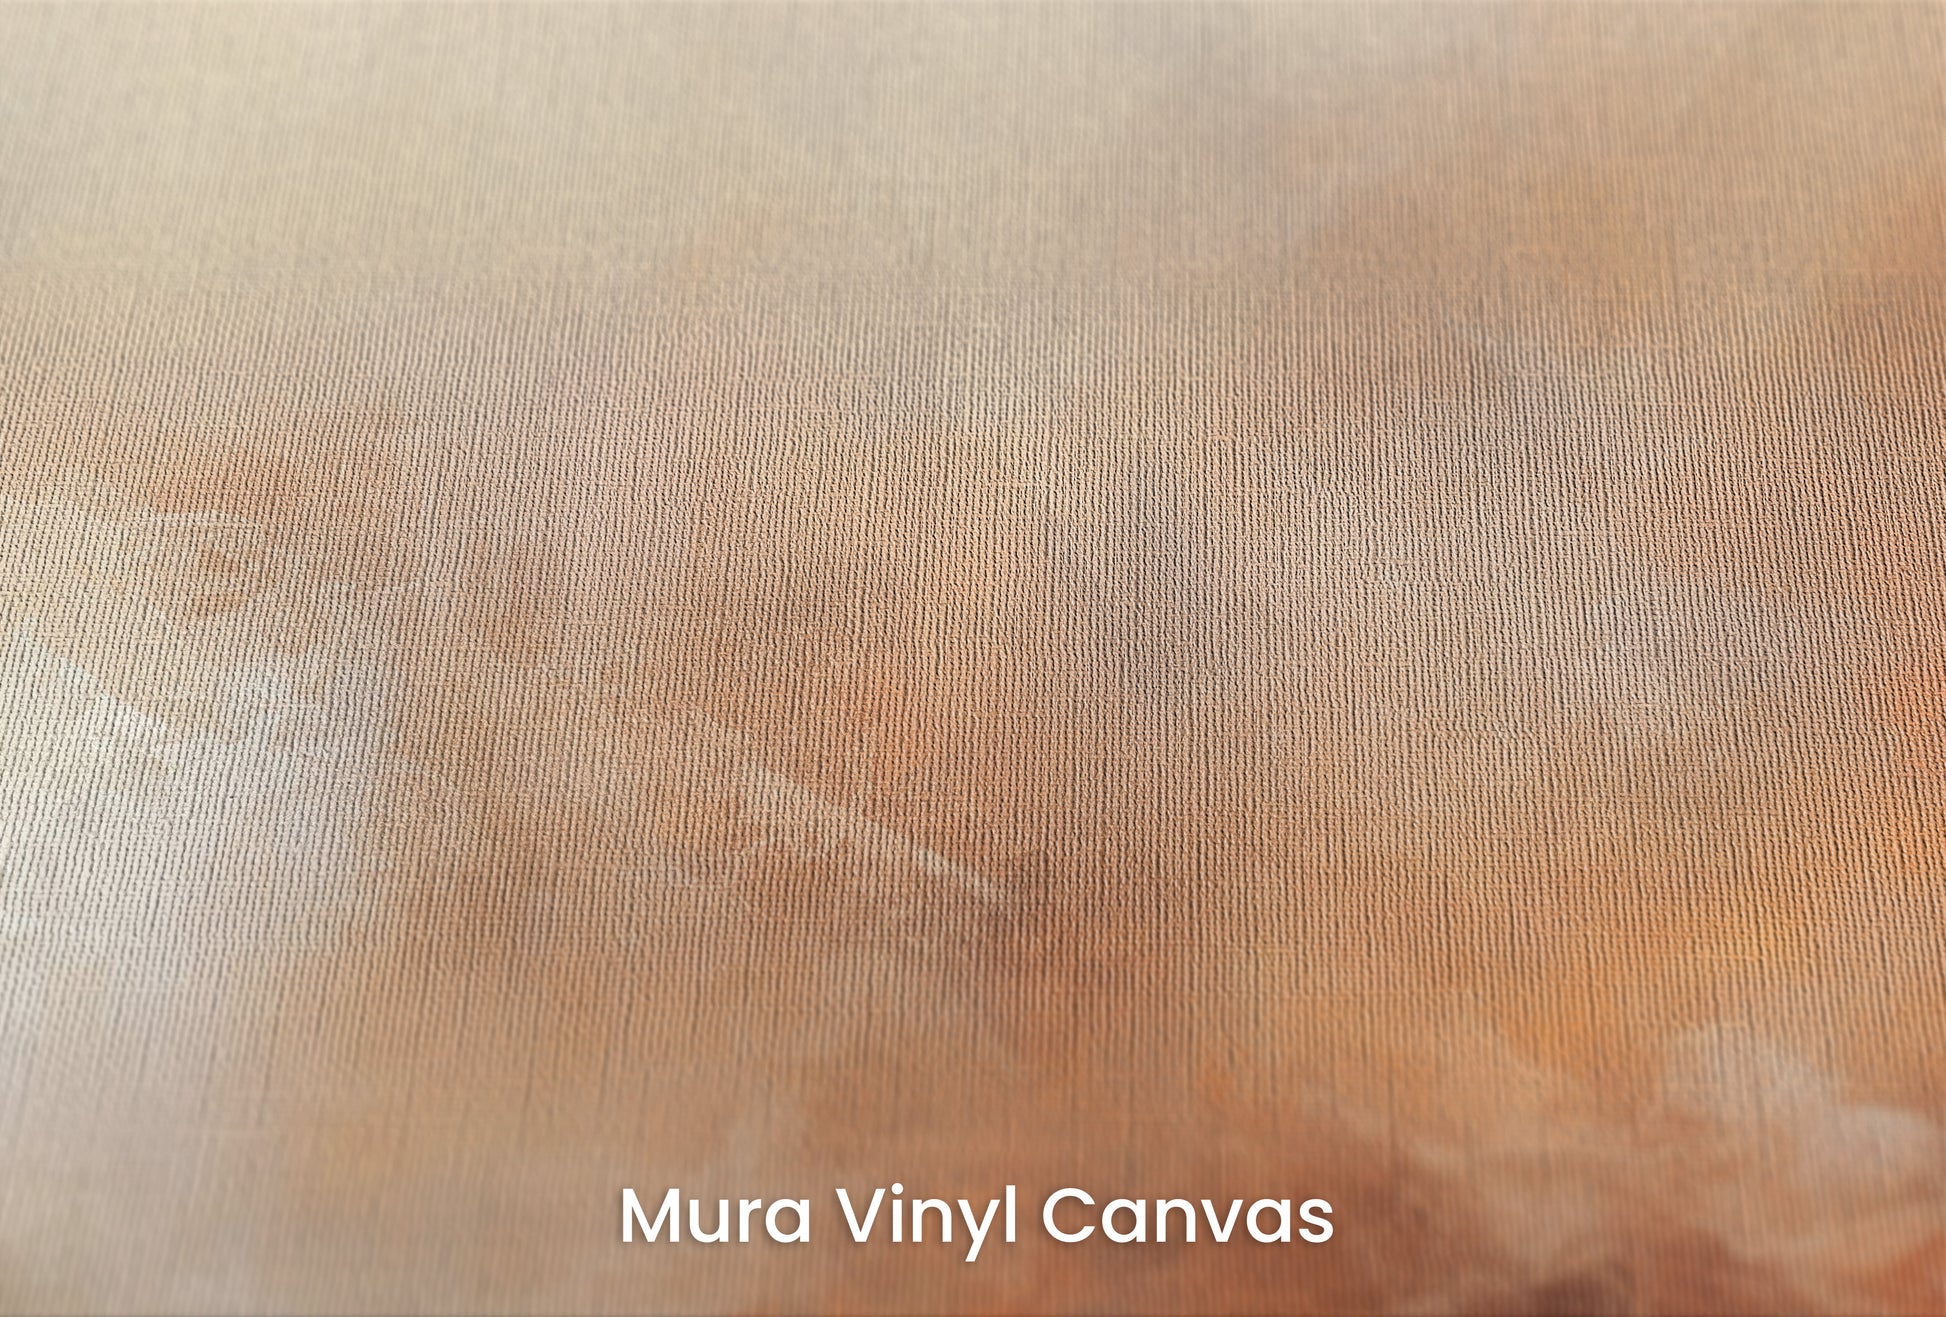 Zbliżenie na artystyczną fototapetę o nazwie DUSK RADIANCE ABSTRACT na podłożu Mura Vinyl Canvas - faktura naturalnego płótna.